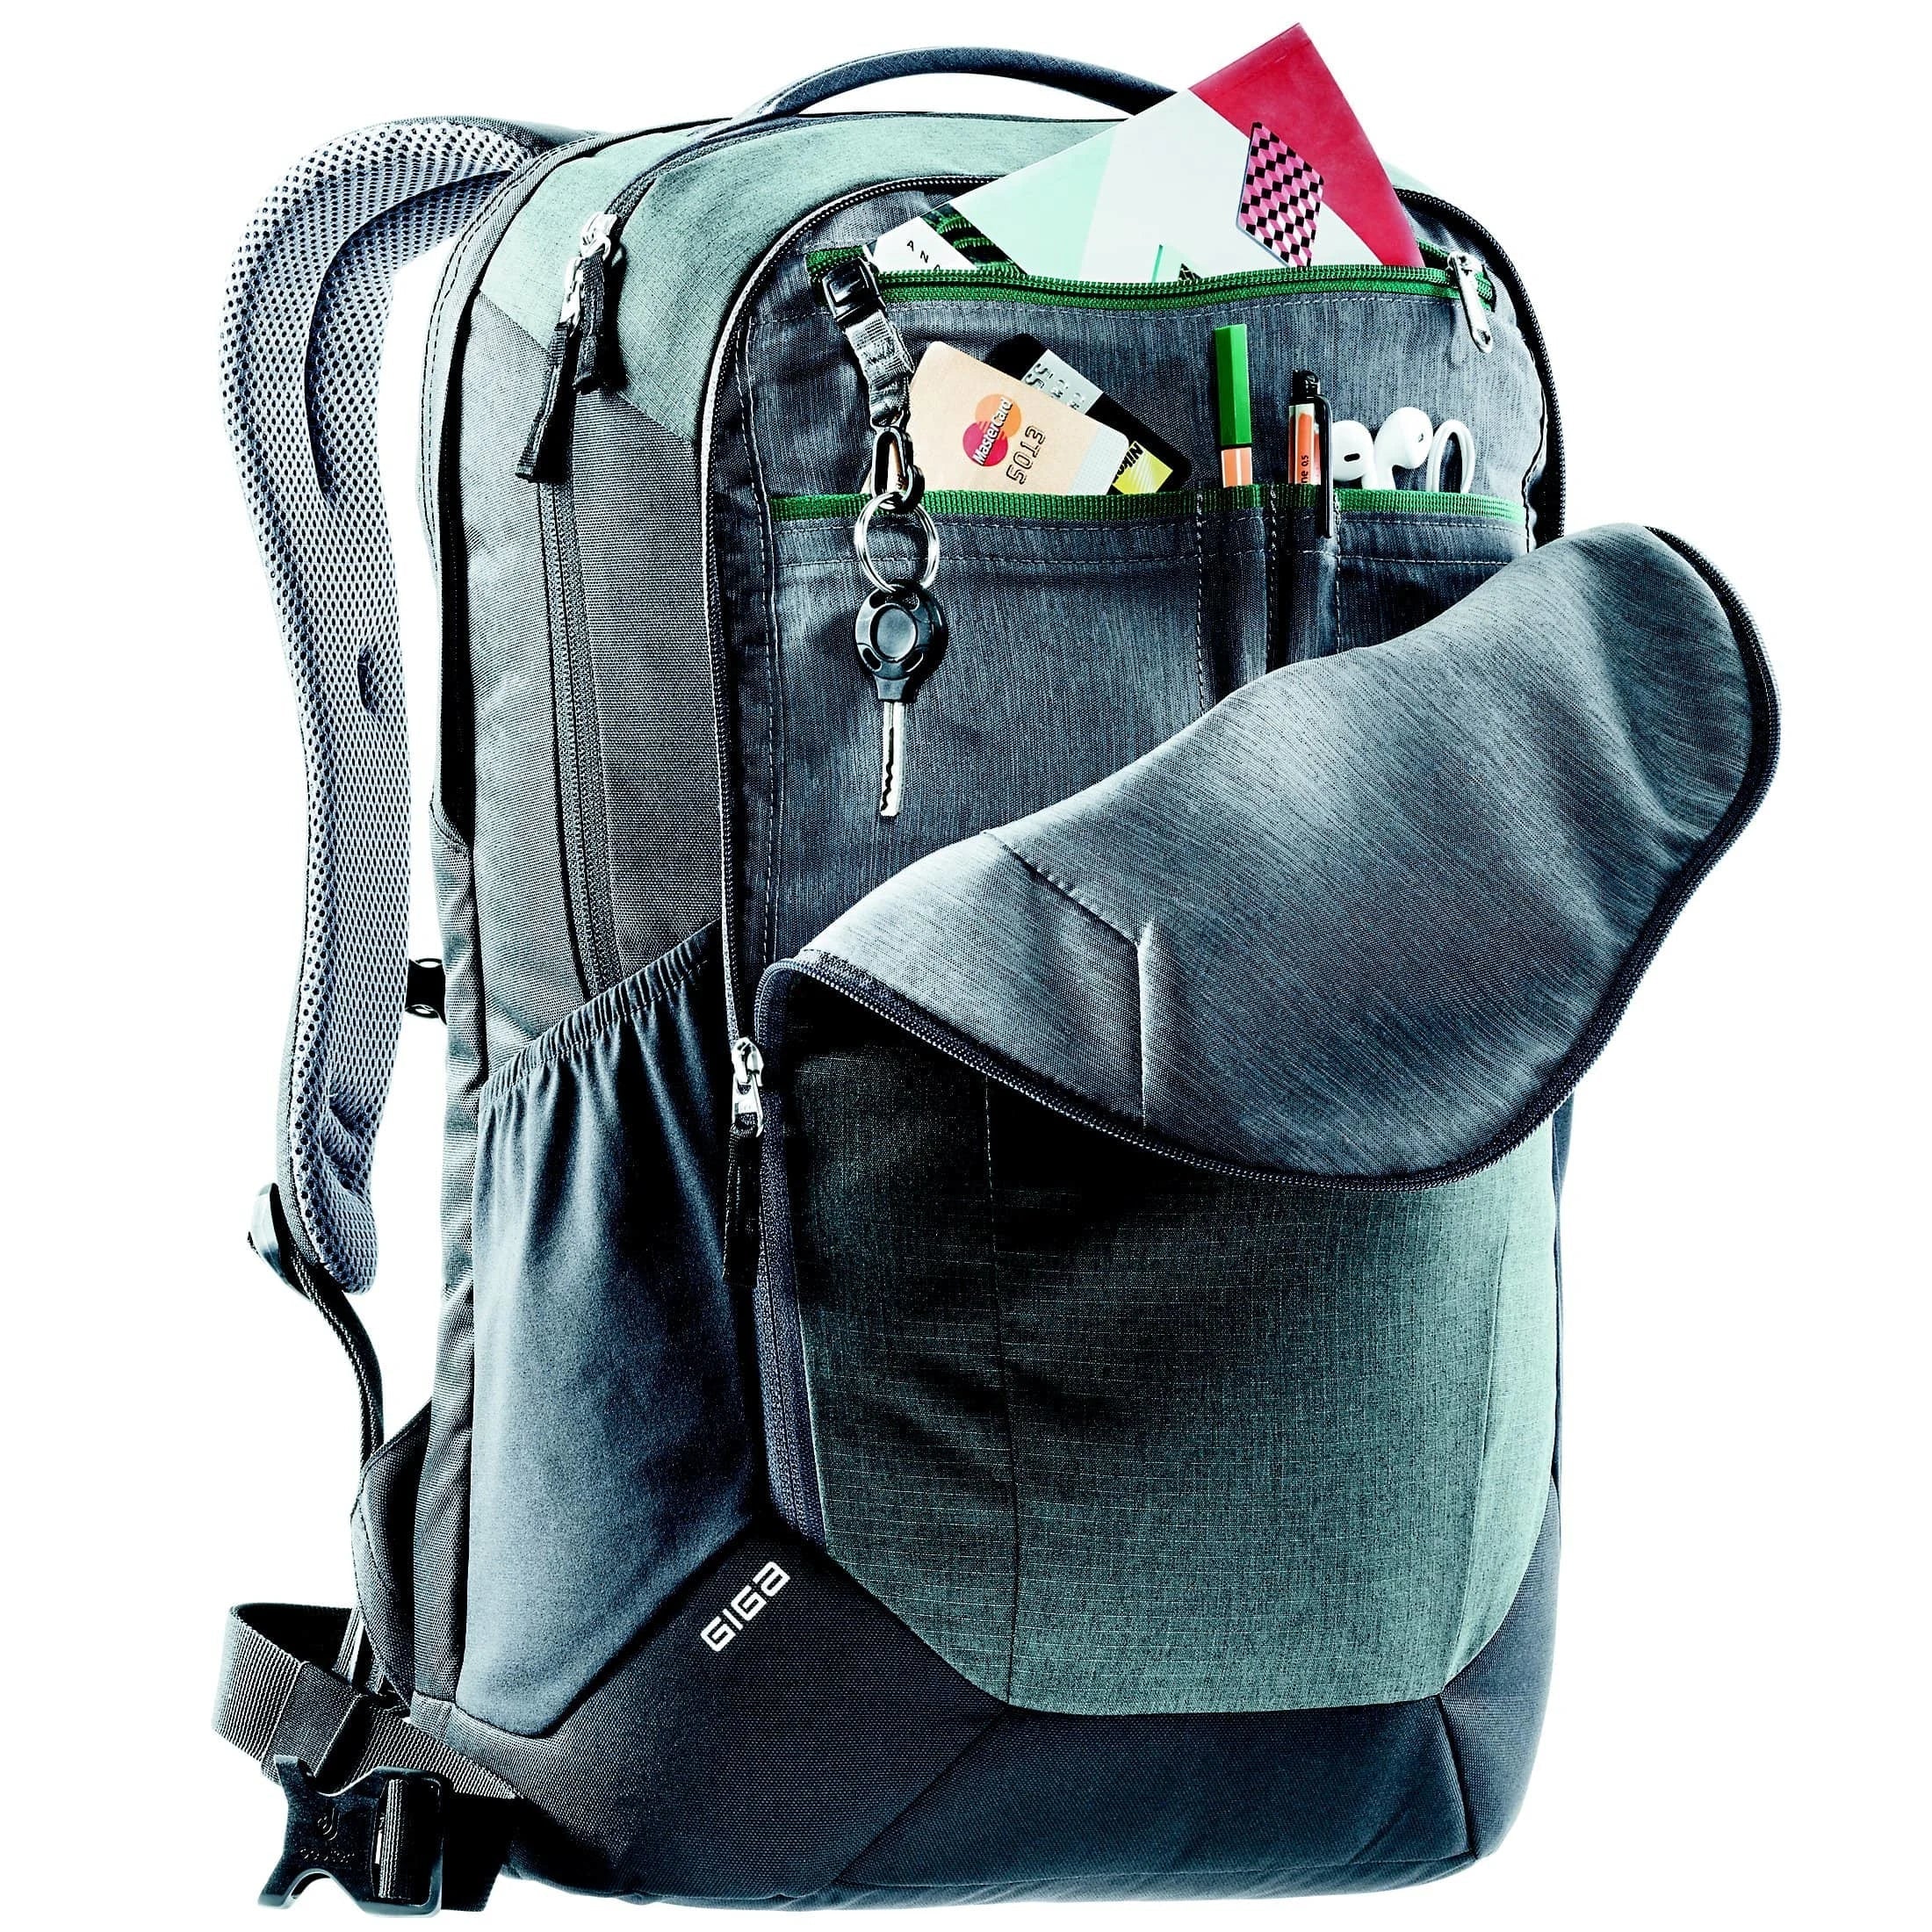 Deuter Daypack Giga Backpack 48 cm - Chestnut Umber